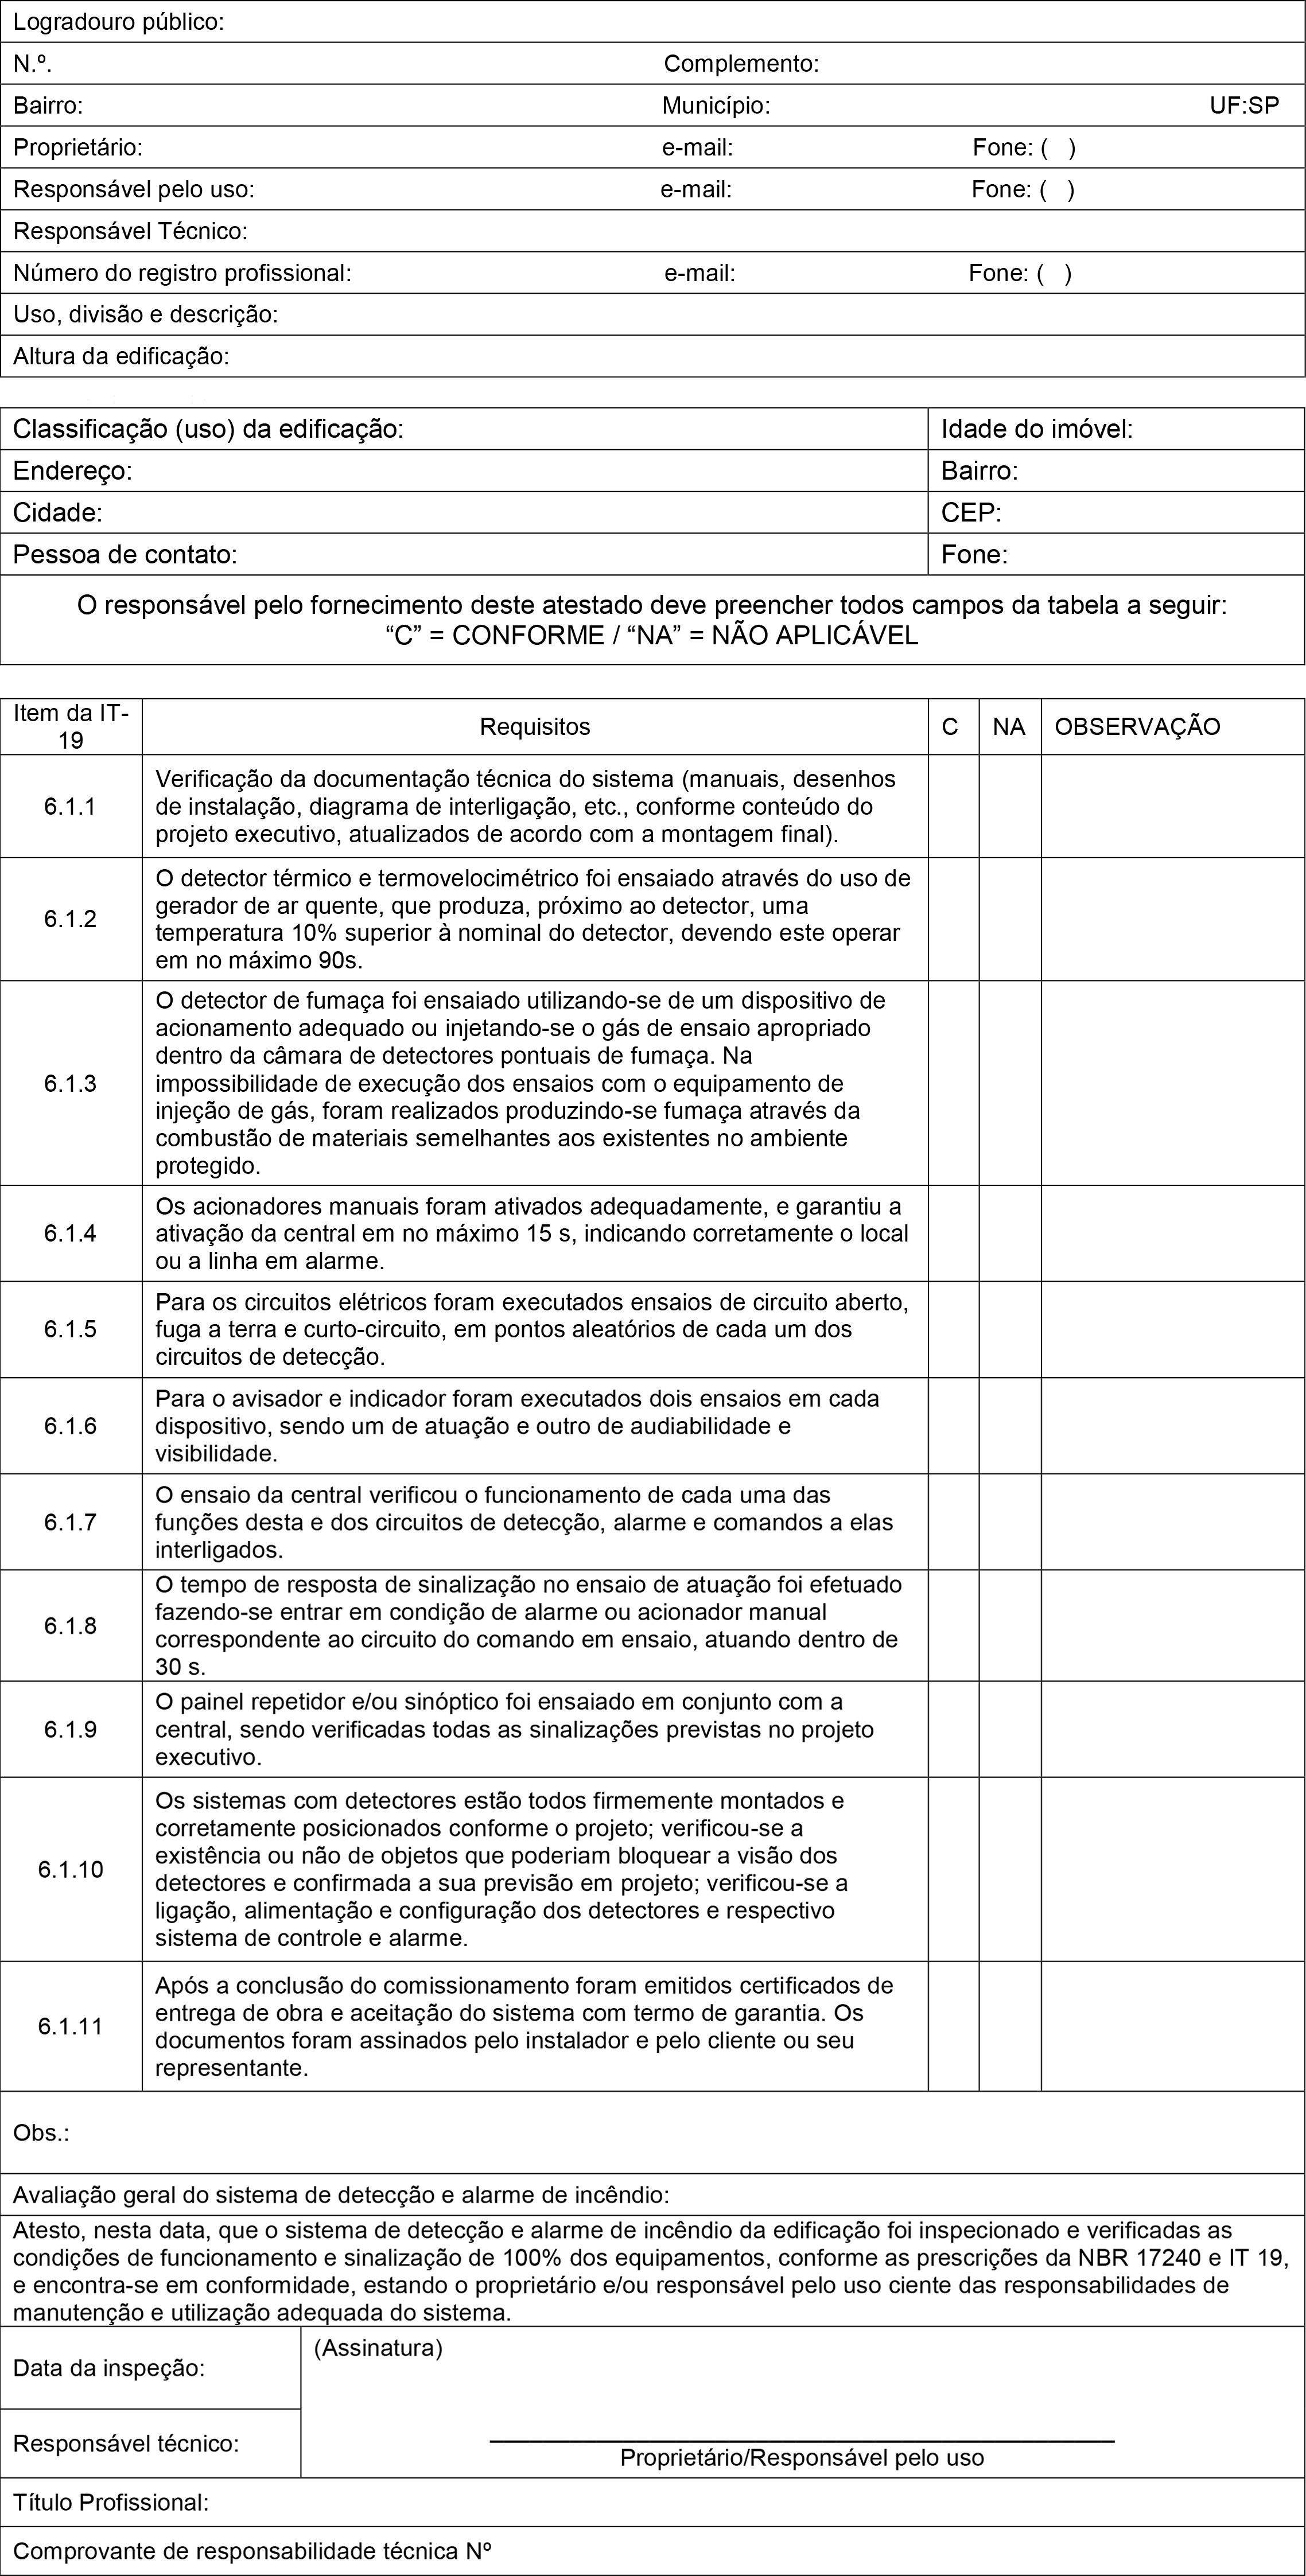 Anexo N: Relatório de Comissionamento e de Inspeção Periódica do Sistema de Detecção e Alarme de Incêndio